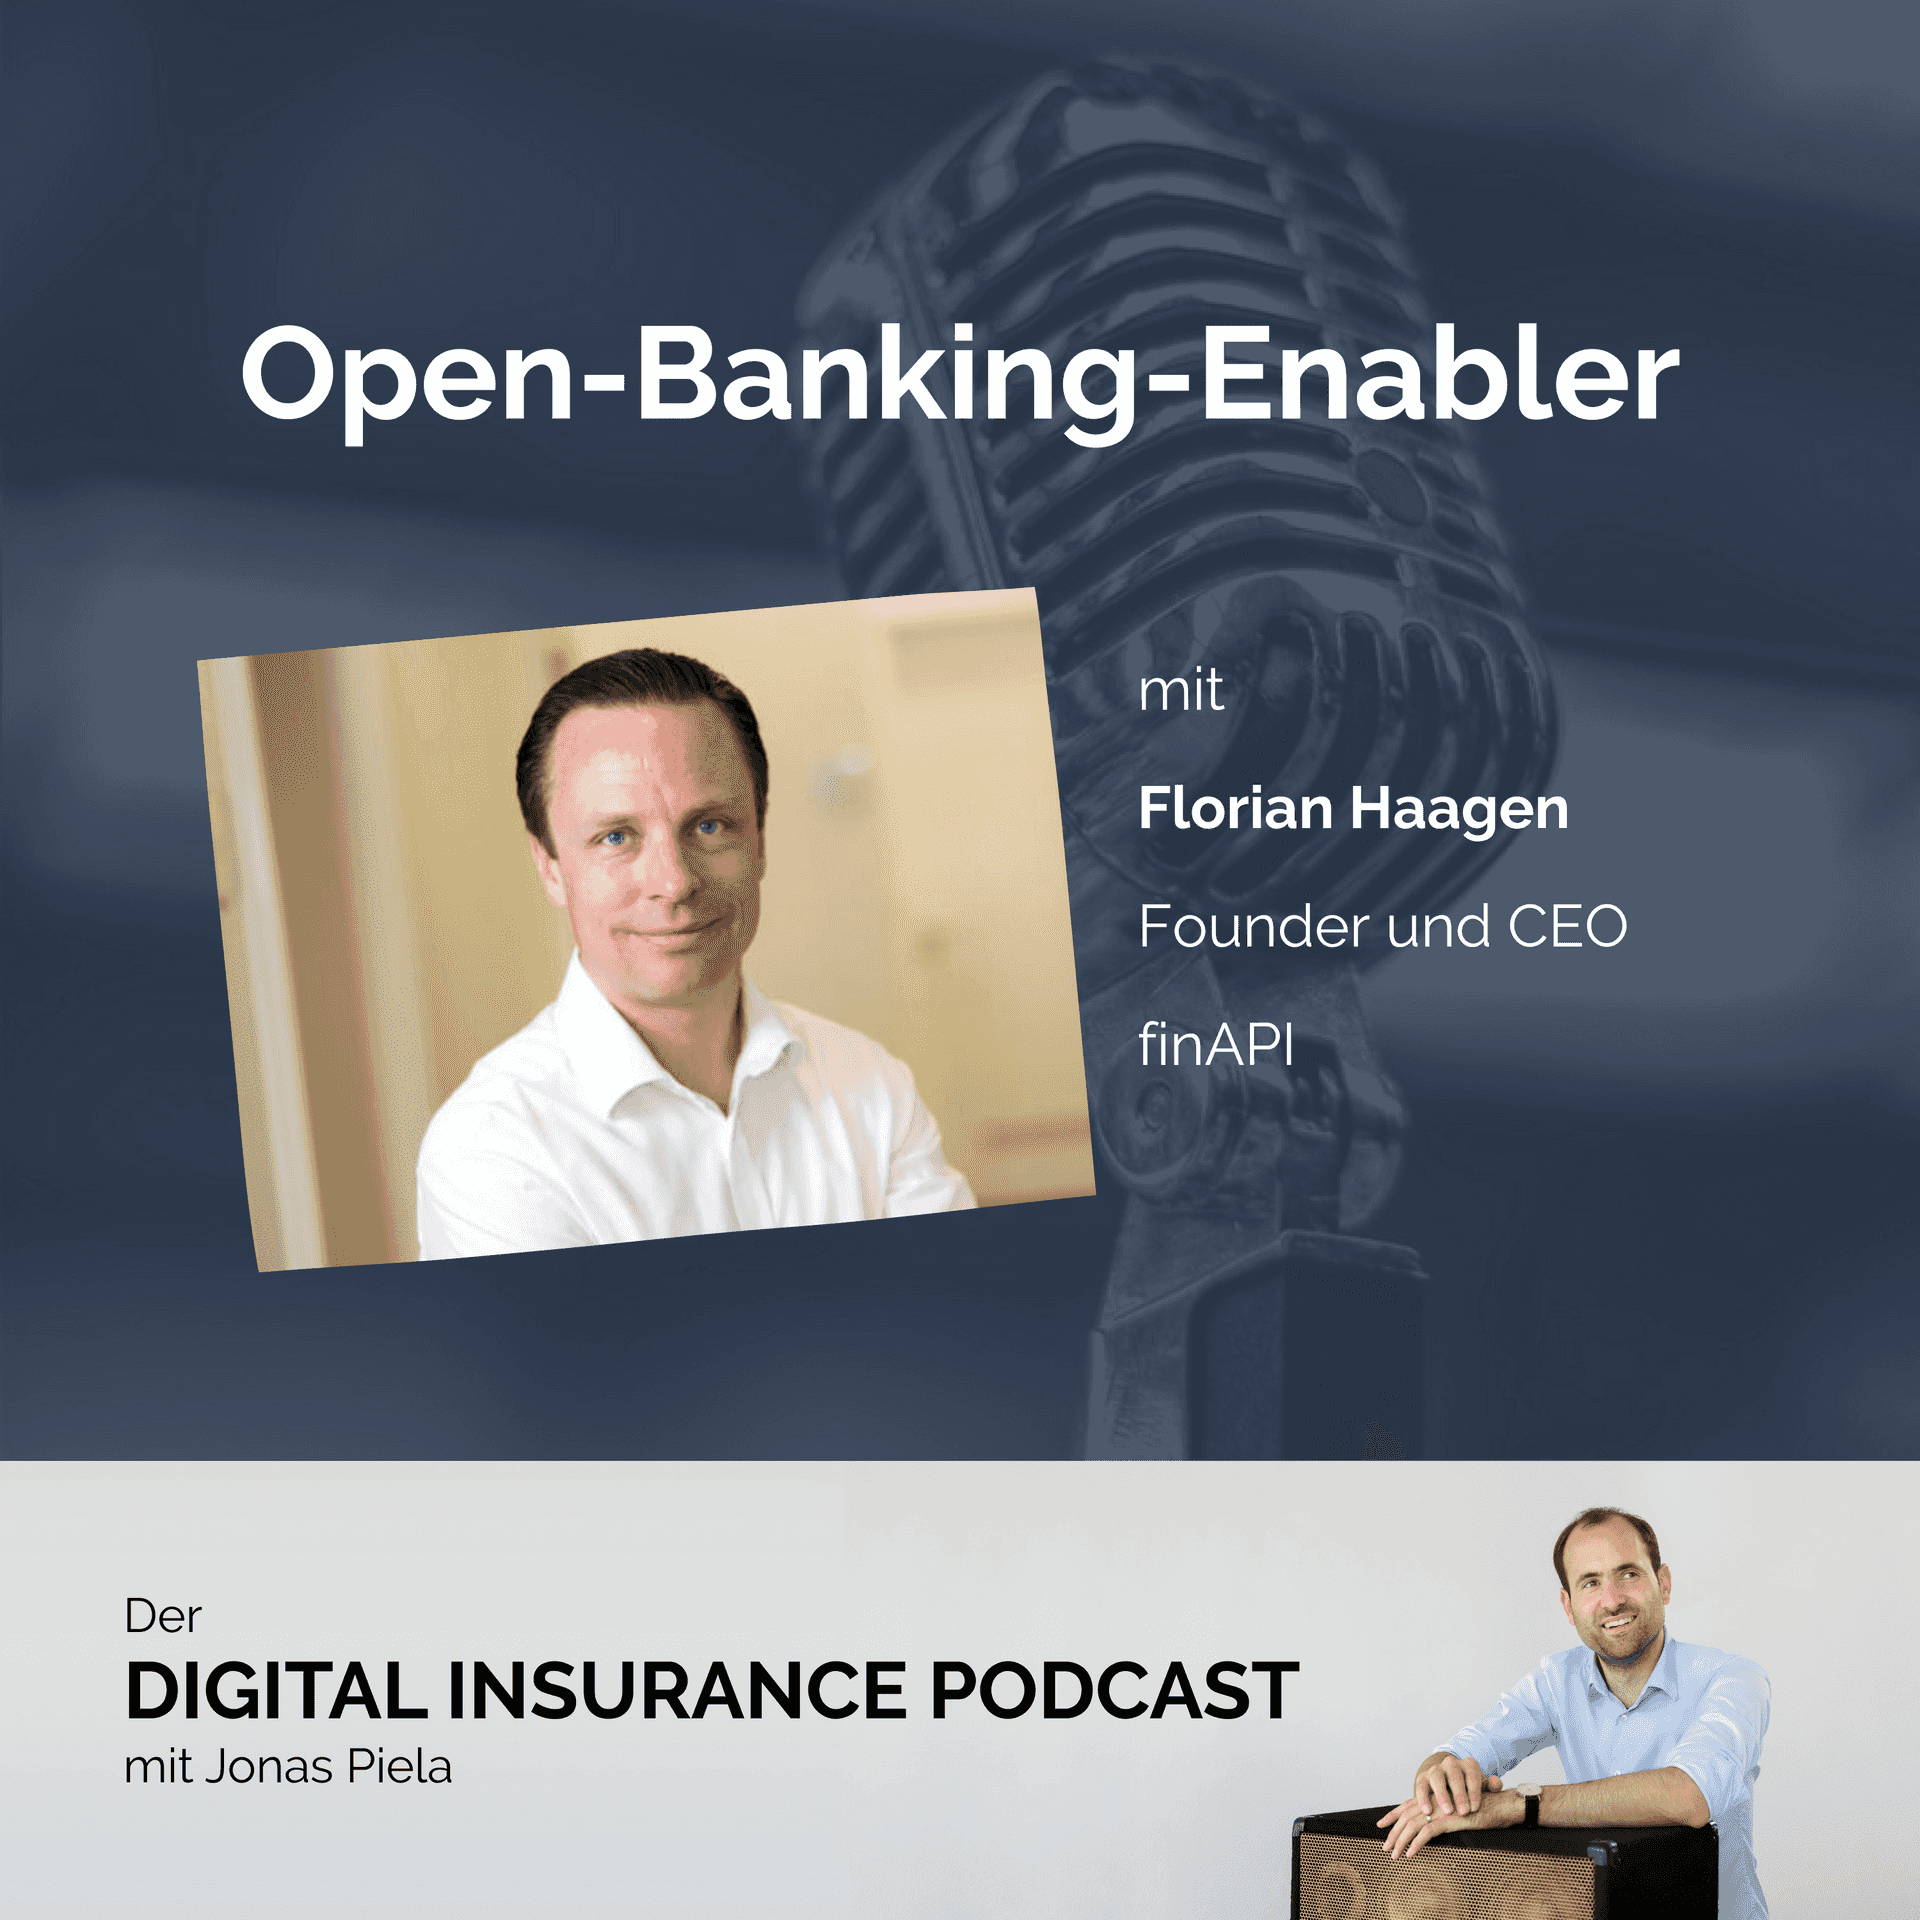 Open-Banking-Enabler mit Florian Haagen